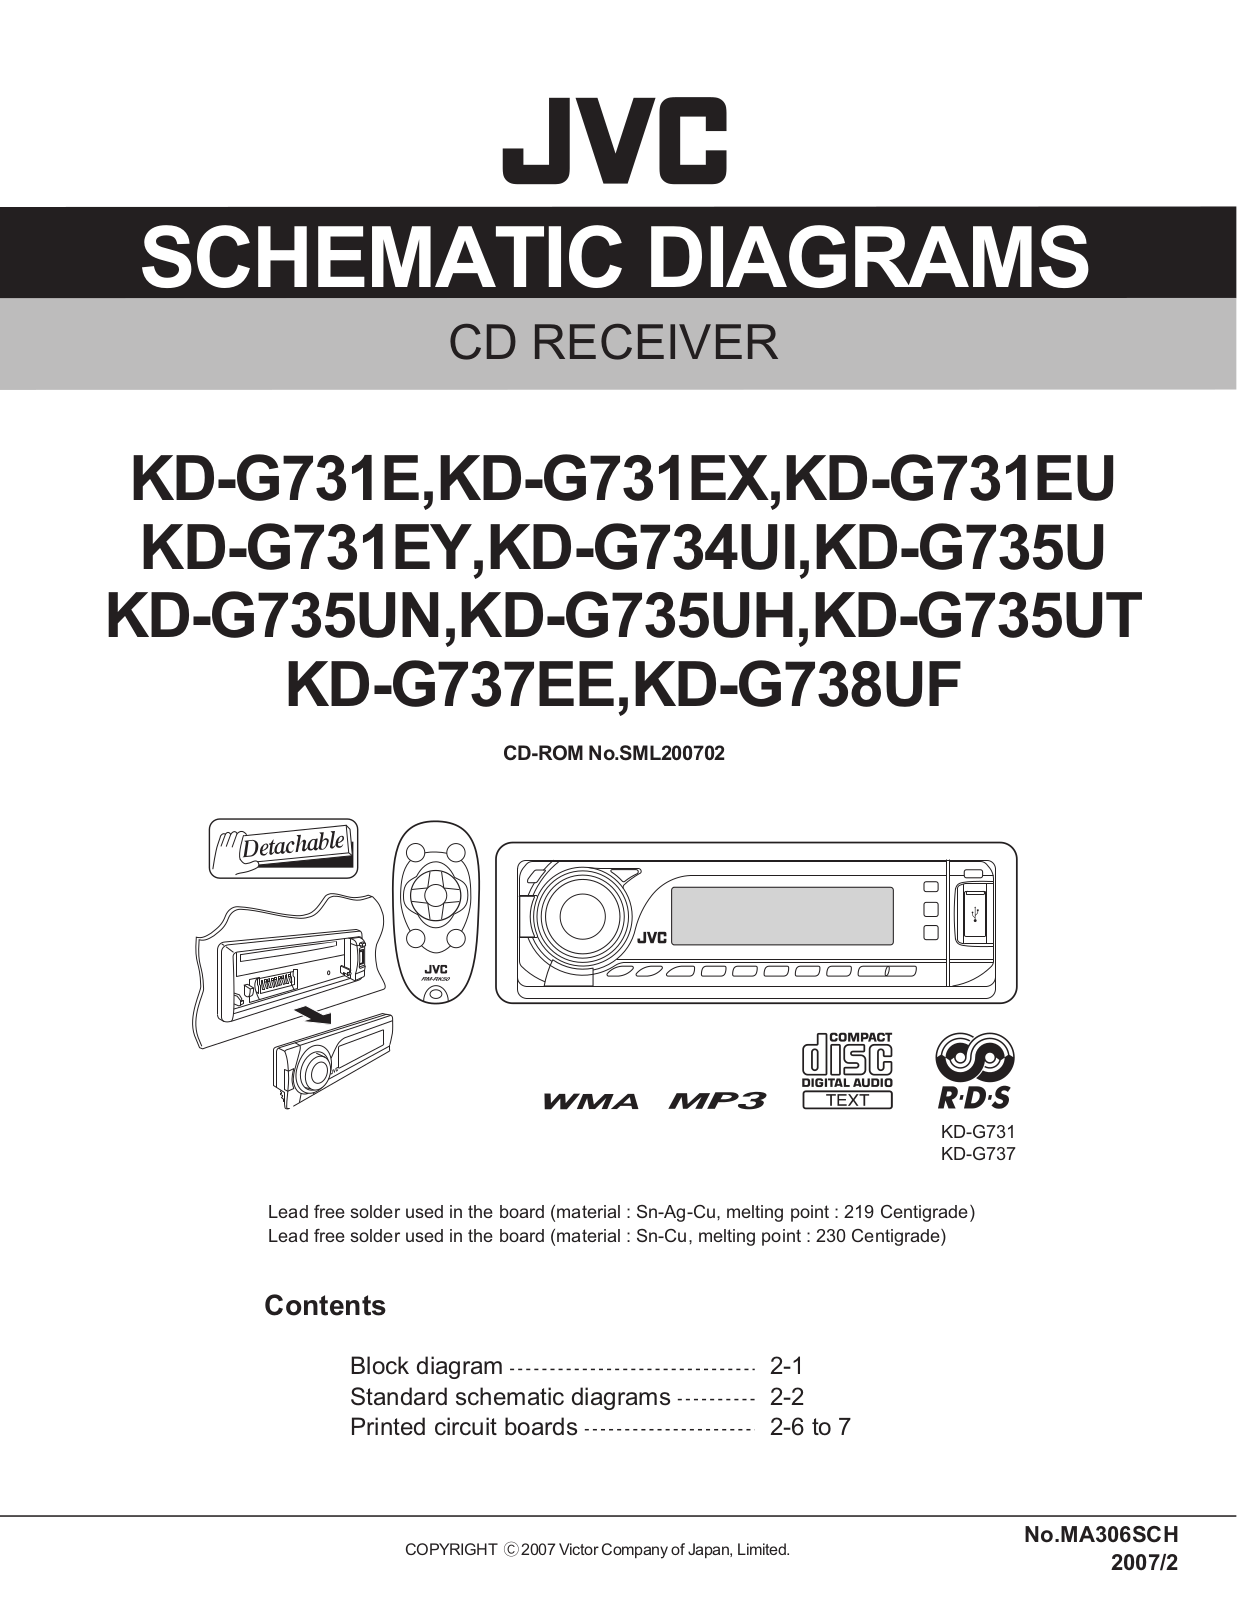 Jvc KD-G738-UF, KD-G737-EE, KD-G735-UT, KD-G735, KD-G731 Service Manual